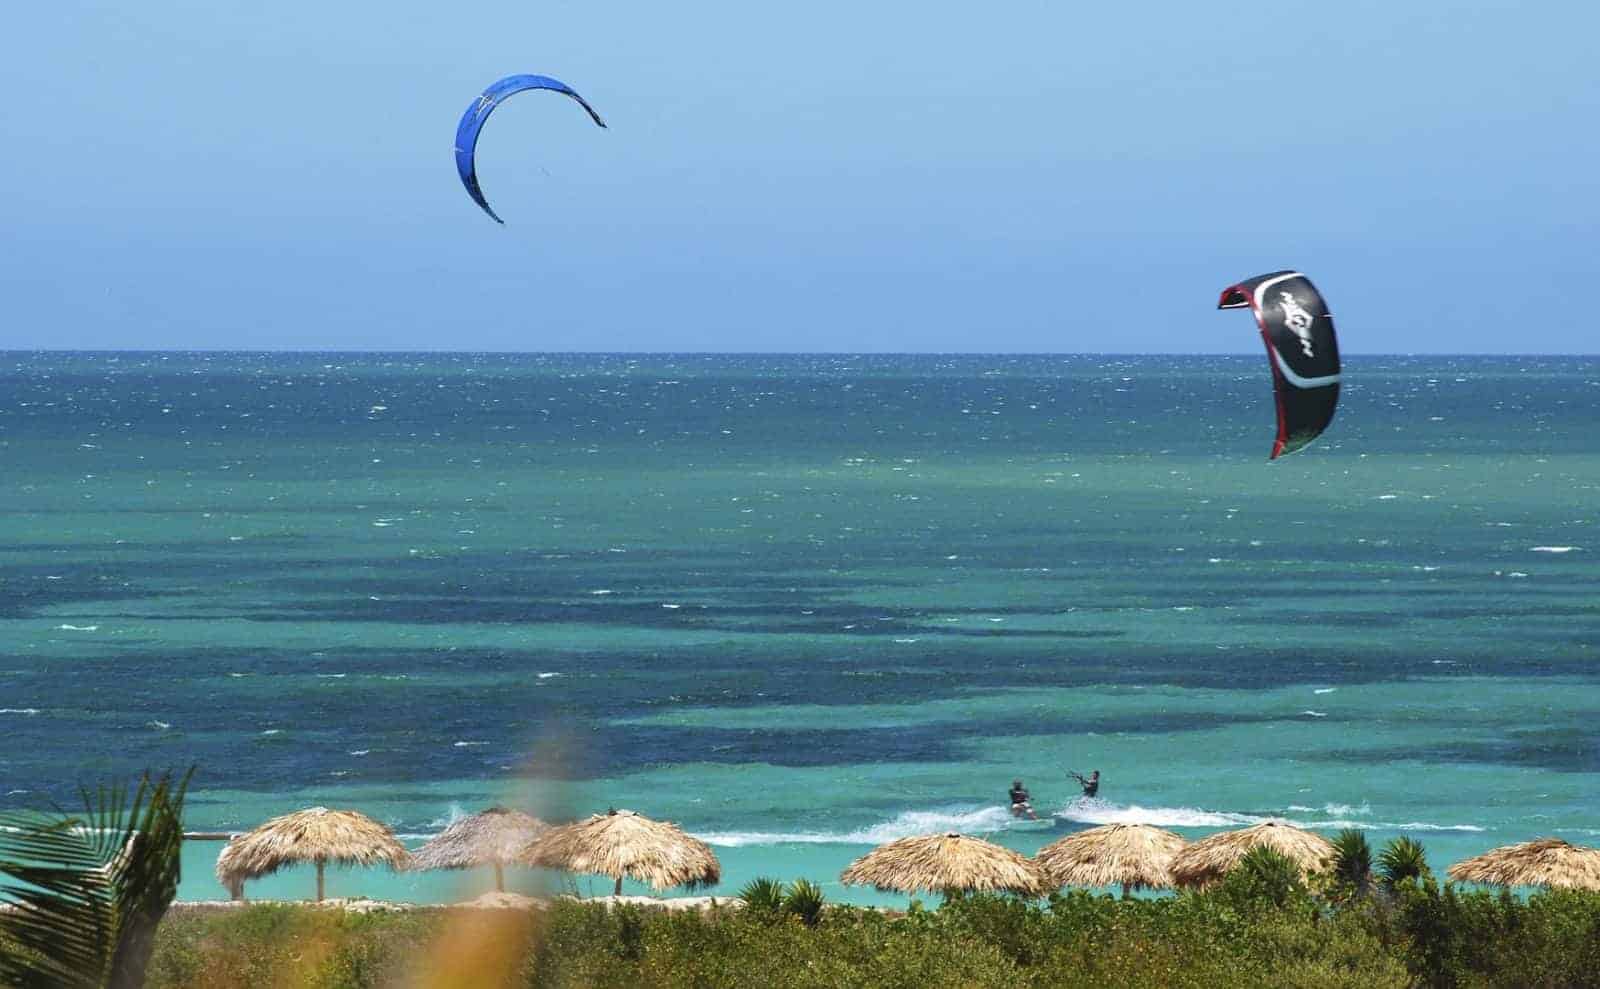 Kitesurfing in Cuba // Kiterr.com